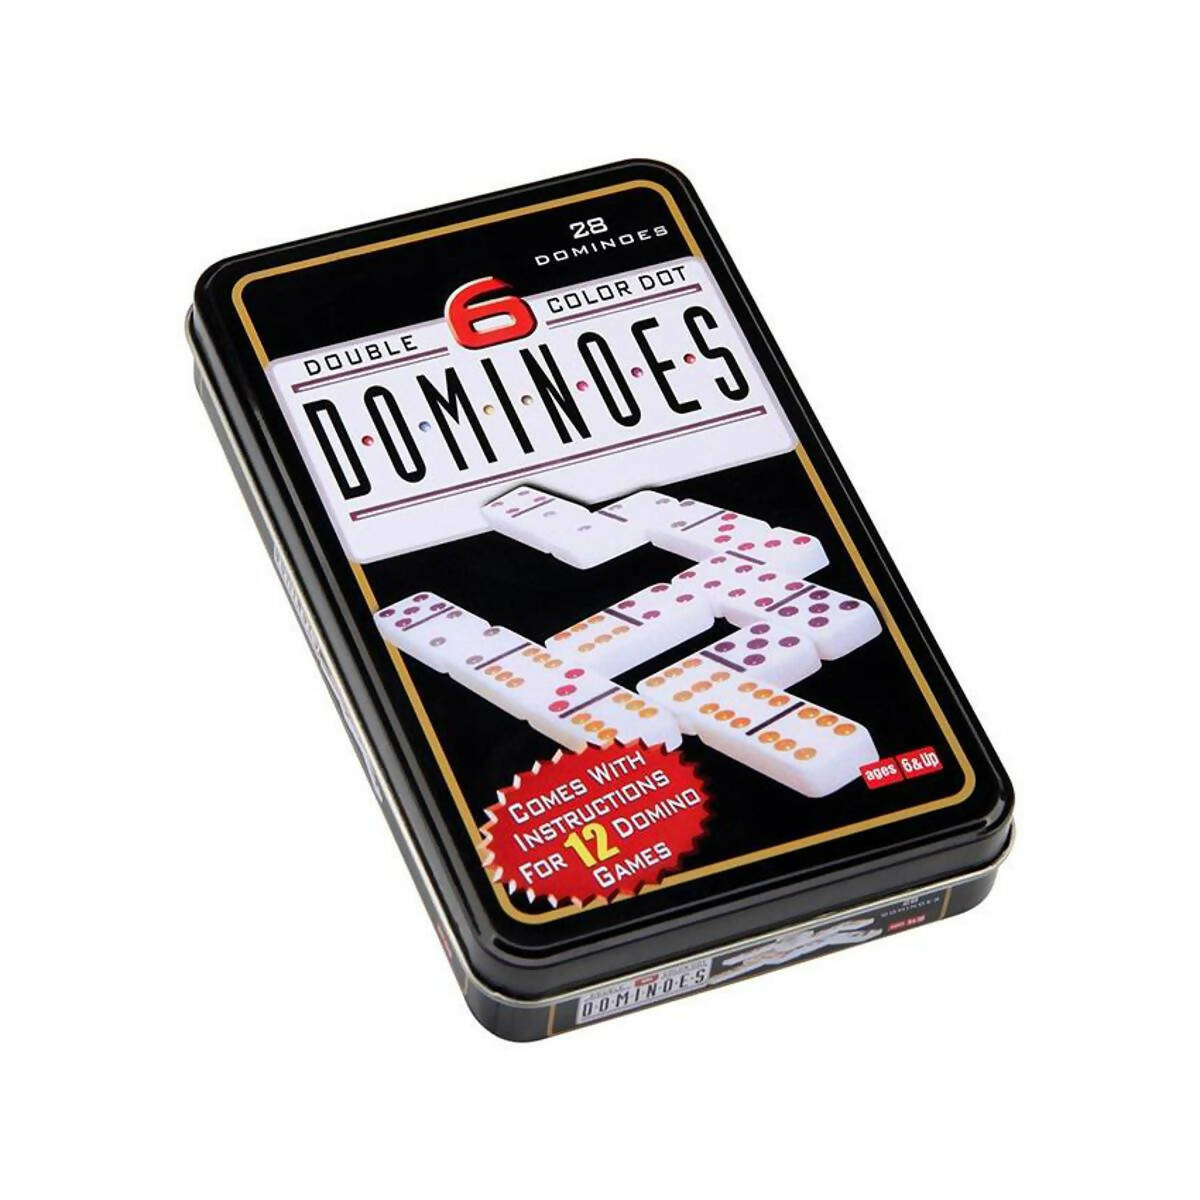 Dominoes Board Game - Tin Packs (28Pcs)